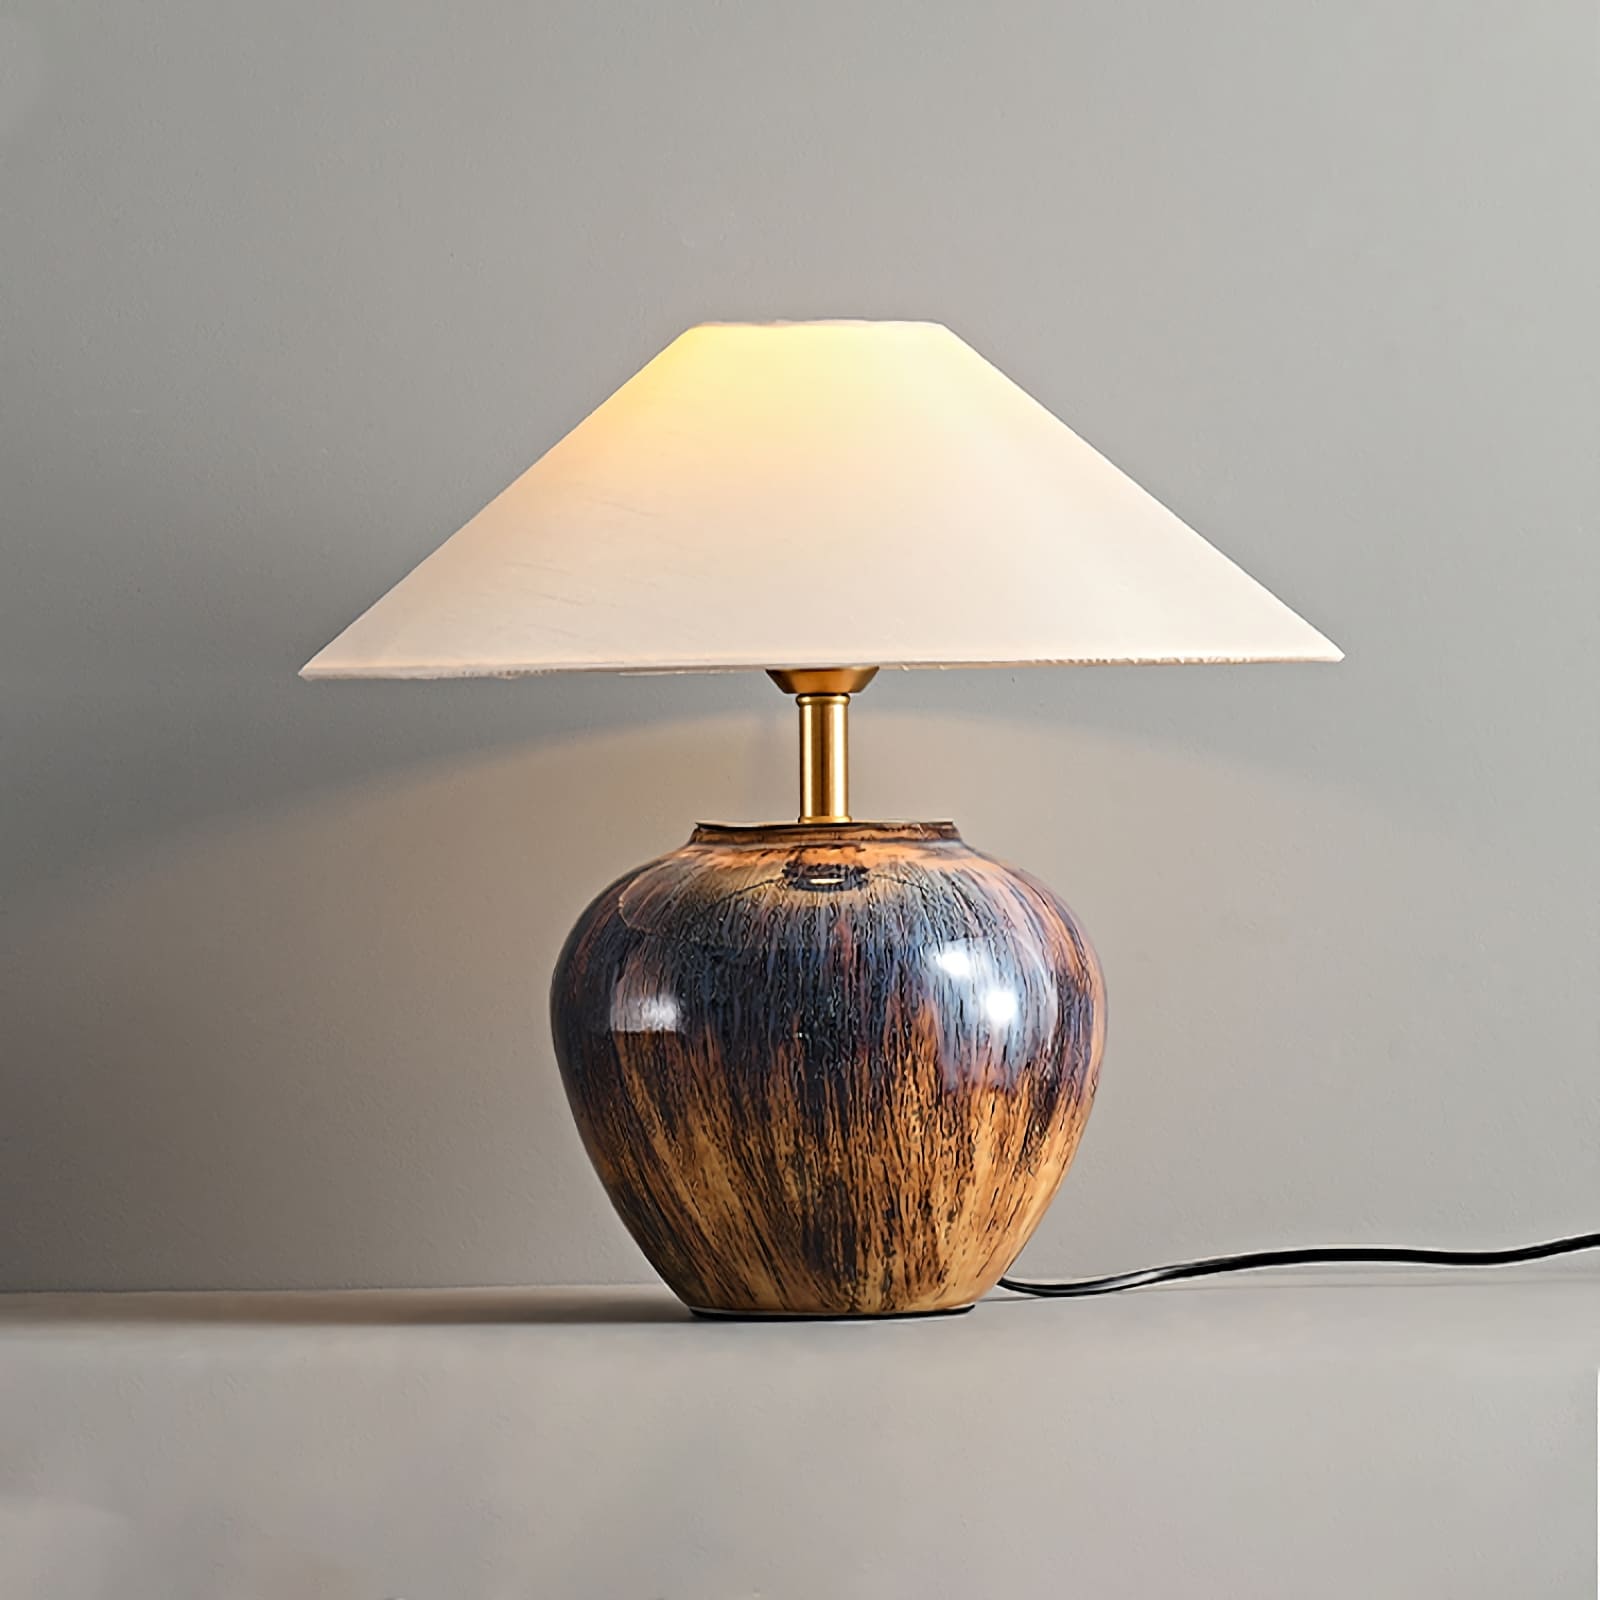 Glazed ceramic table lamp - Vinlighting